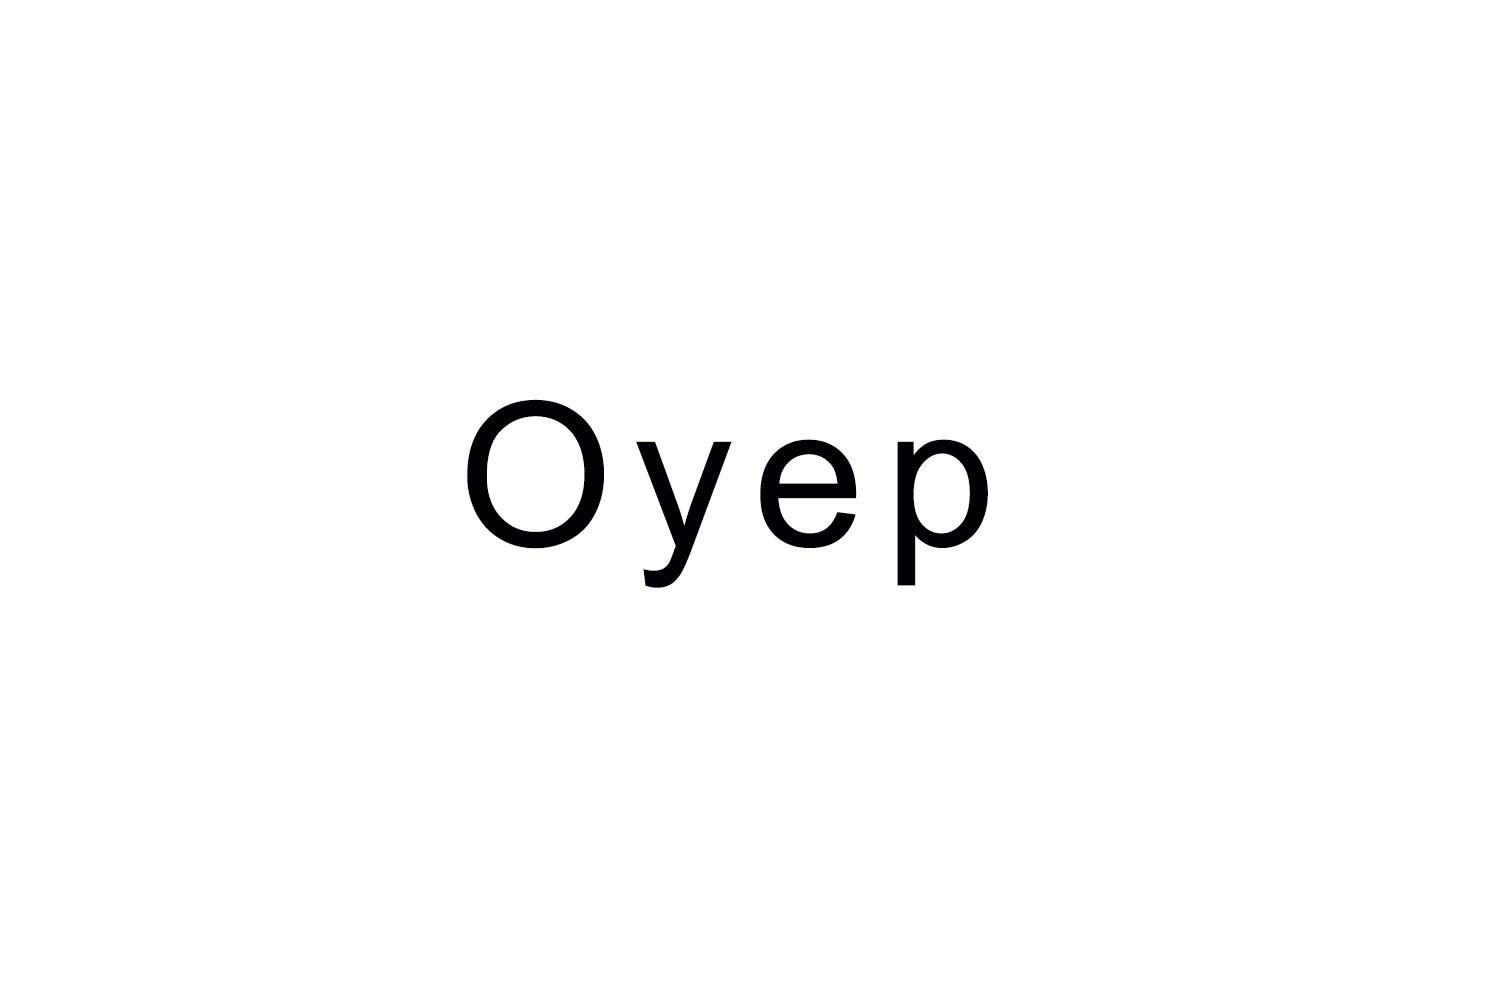 OYEP